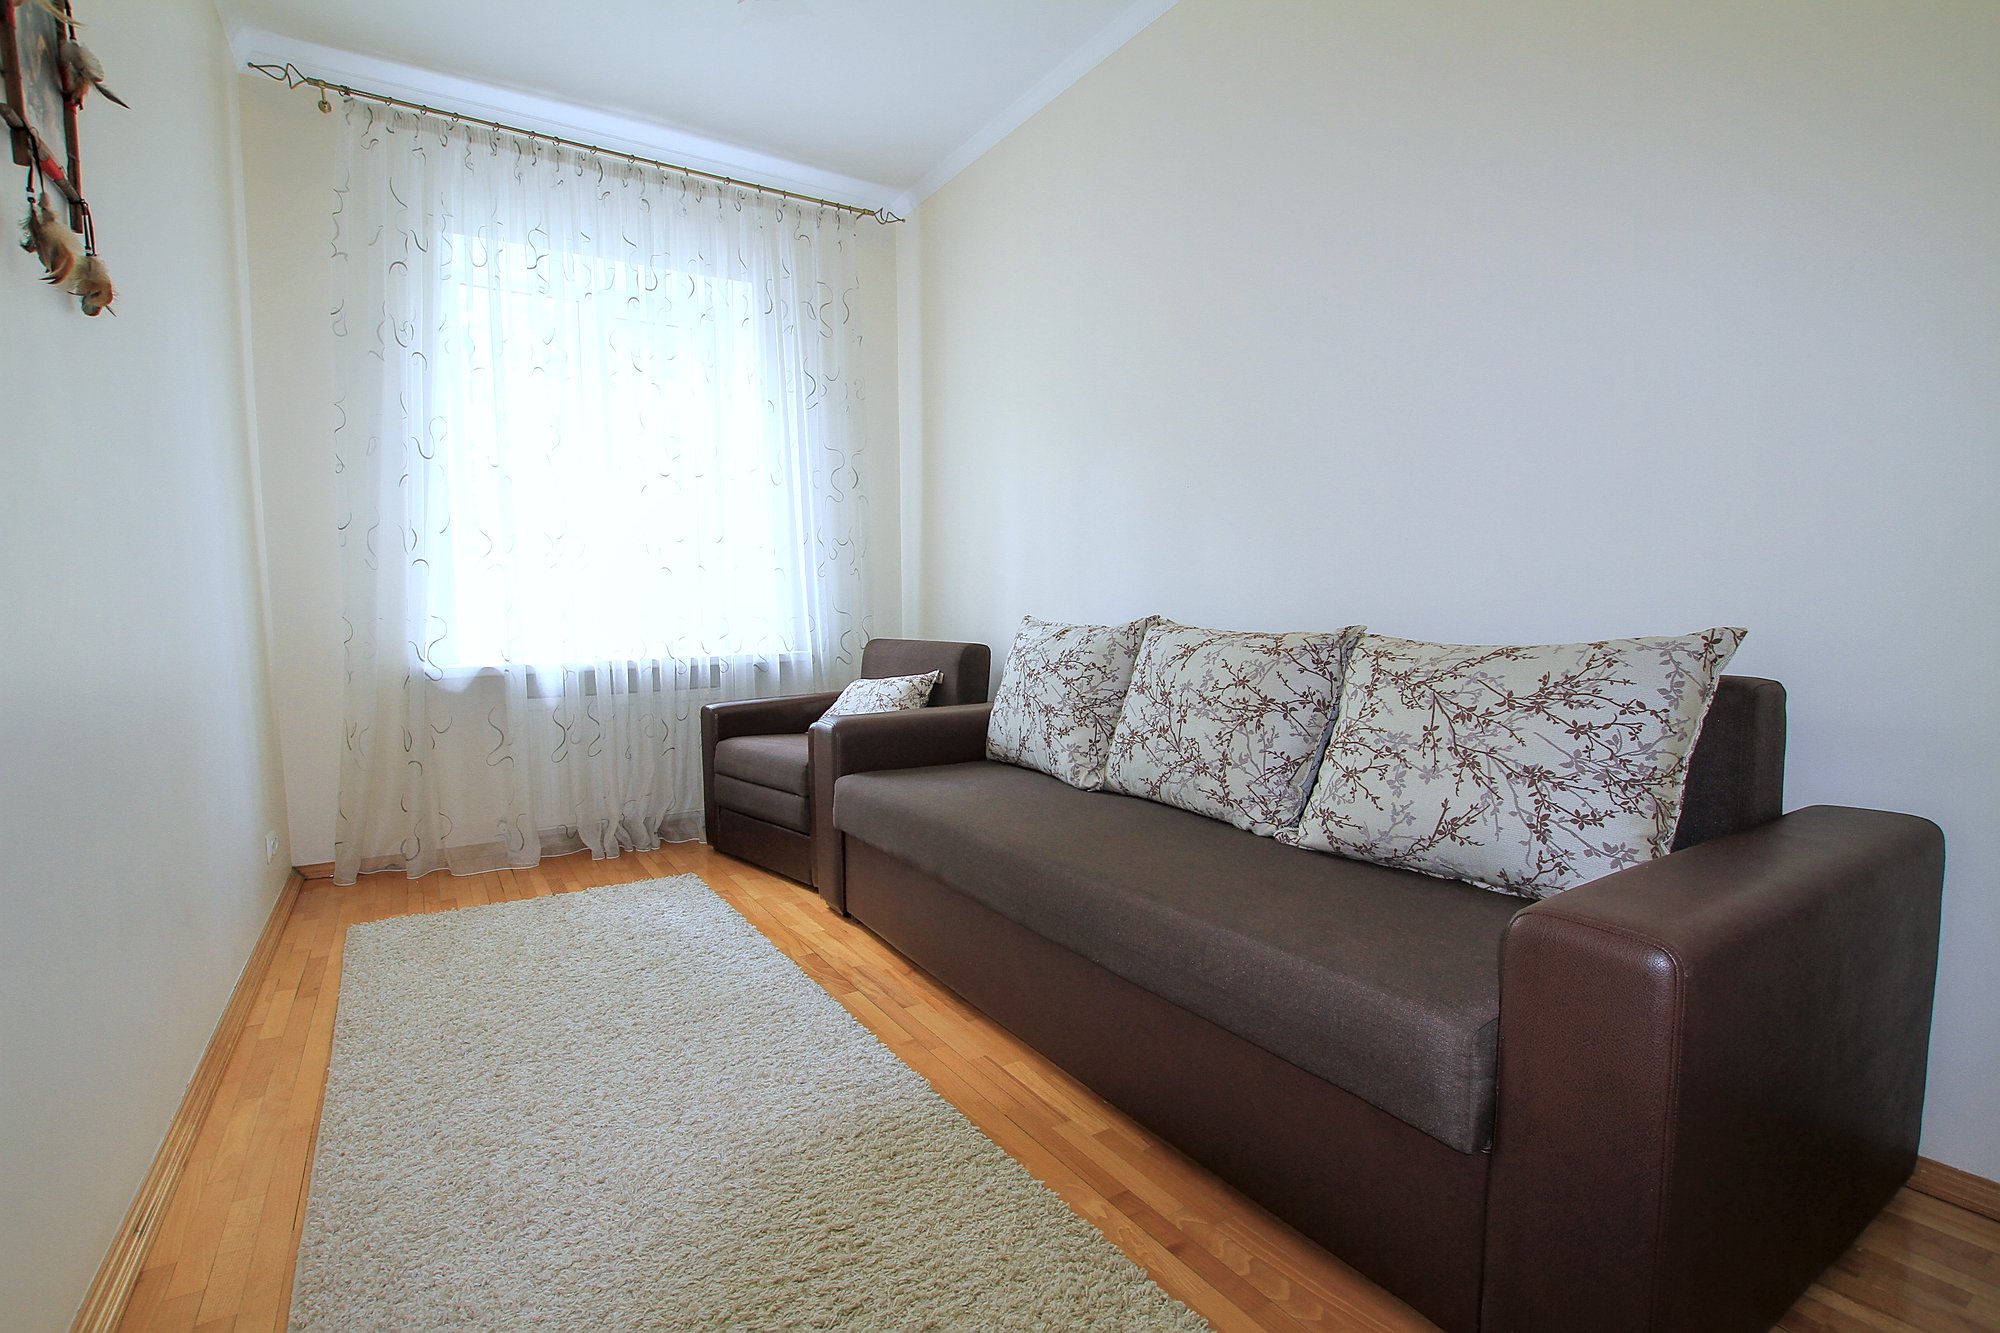 Downtown Lease это квартира в аренду в Кишиневе имеющая 3 комнаты в аренду в Кишиневе - Chisinau, Moldova